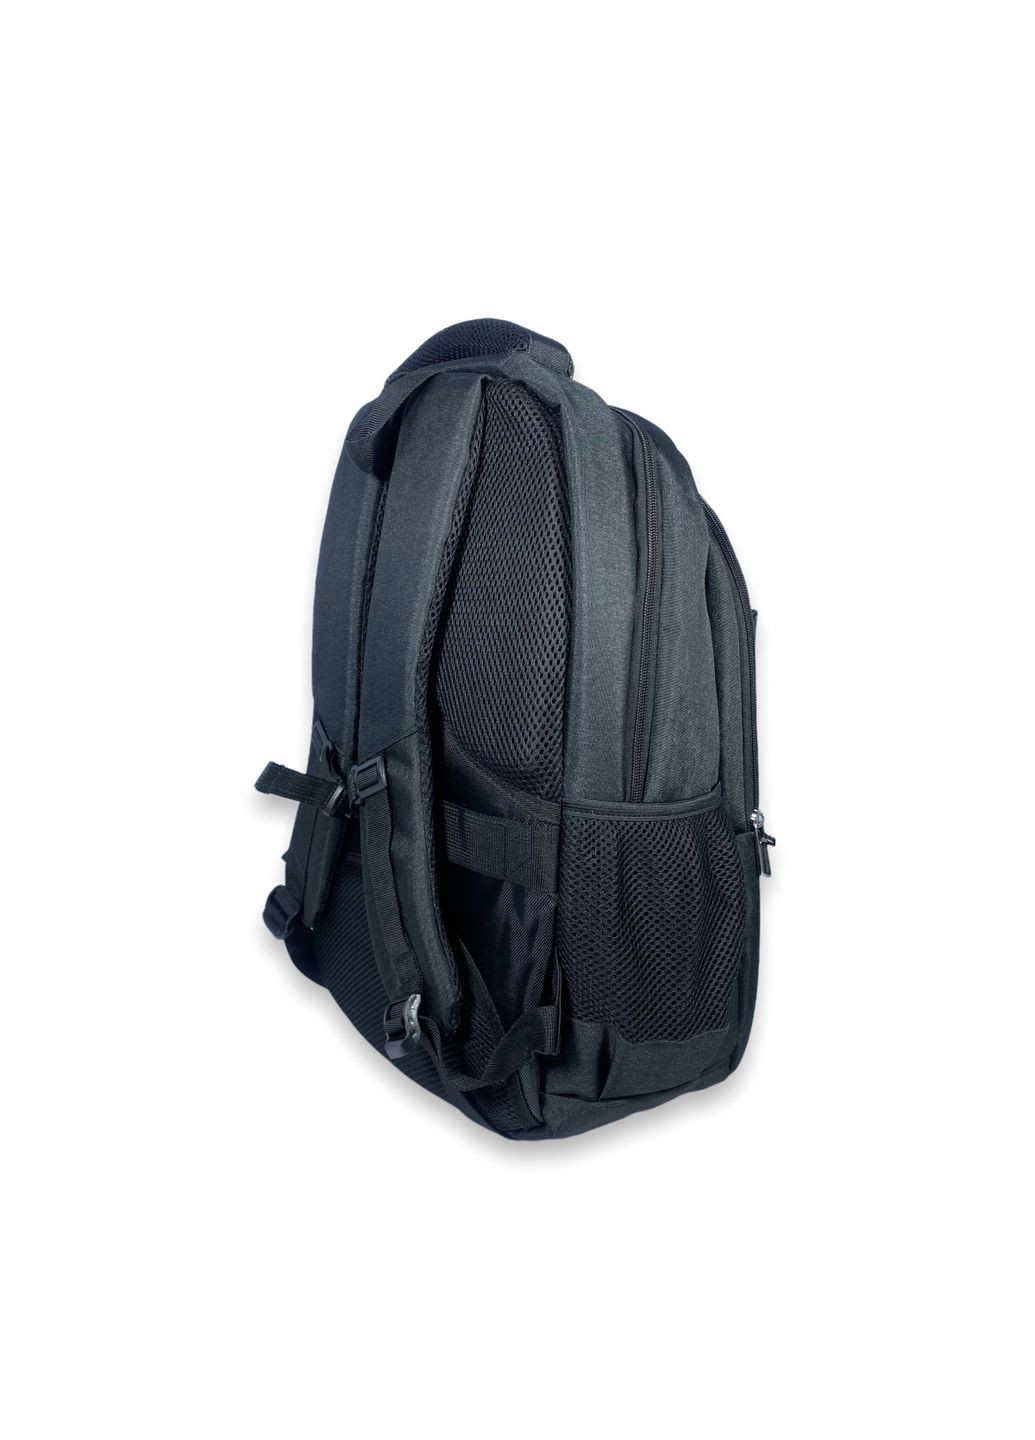 Городской рюкзак, два отдела внутренний карман,фронтальные карманы боковые карманы разм: 50*32*20 черный Xiu Xian Bag (285814843)